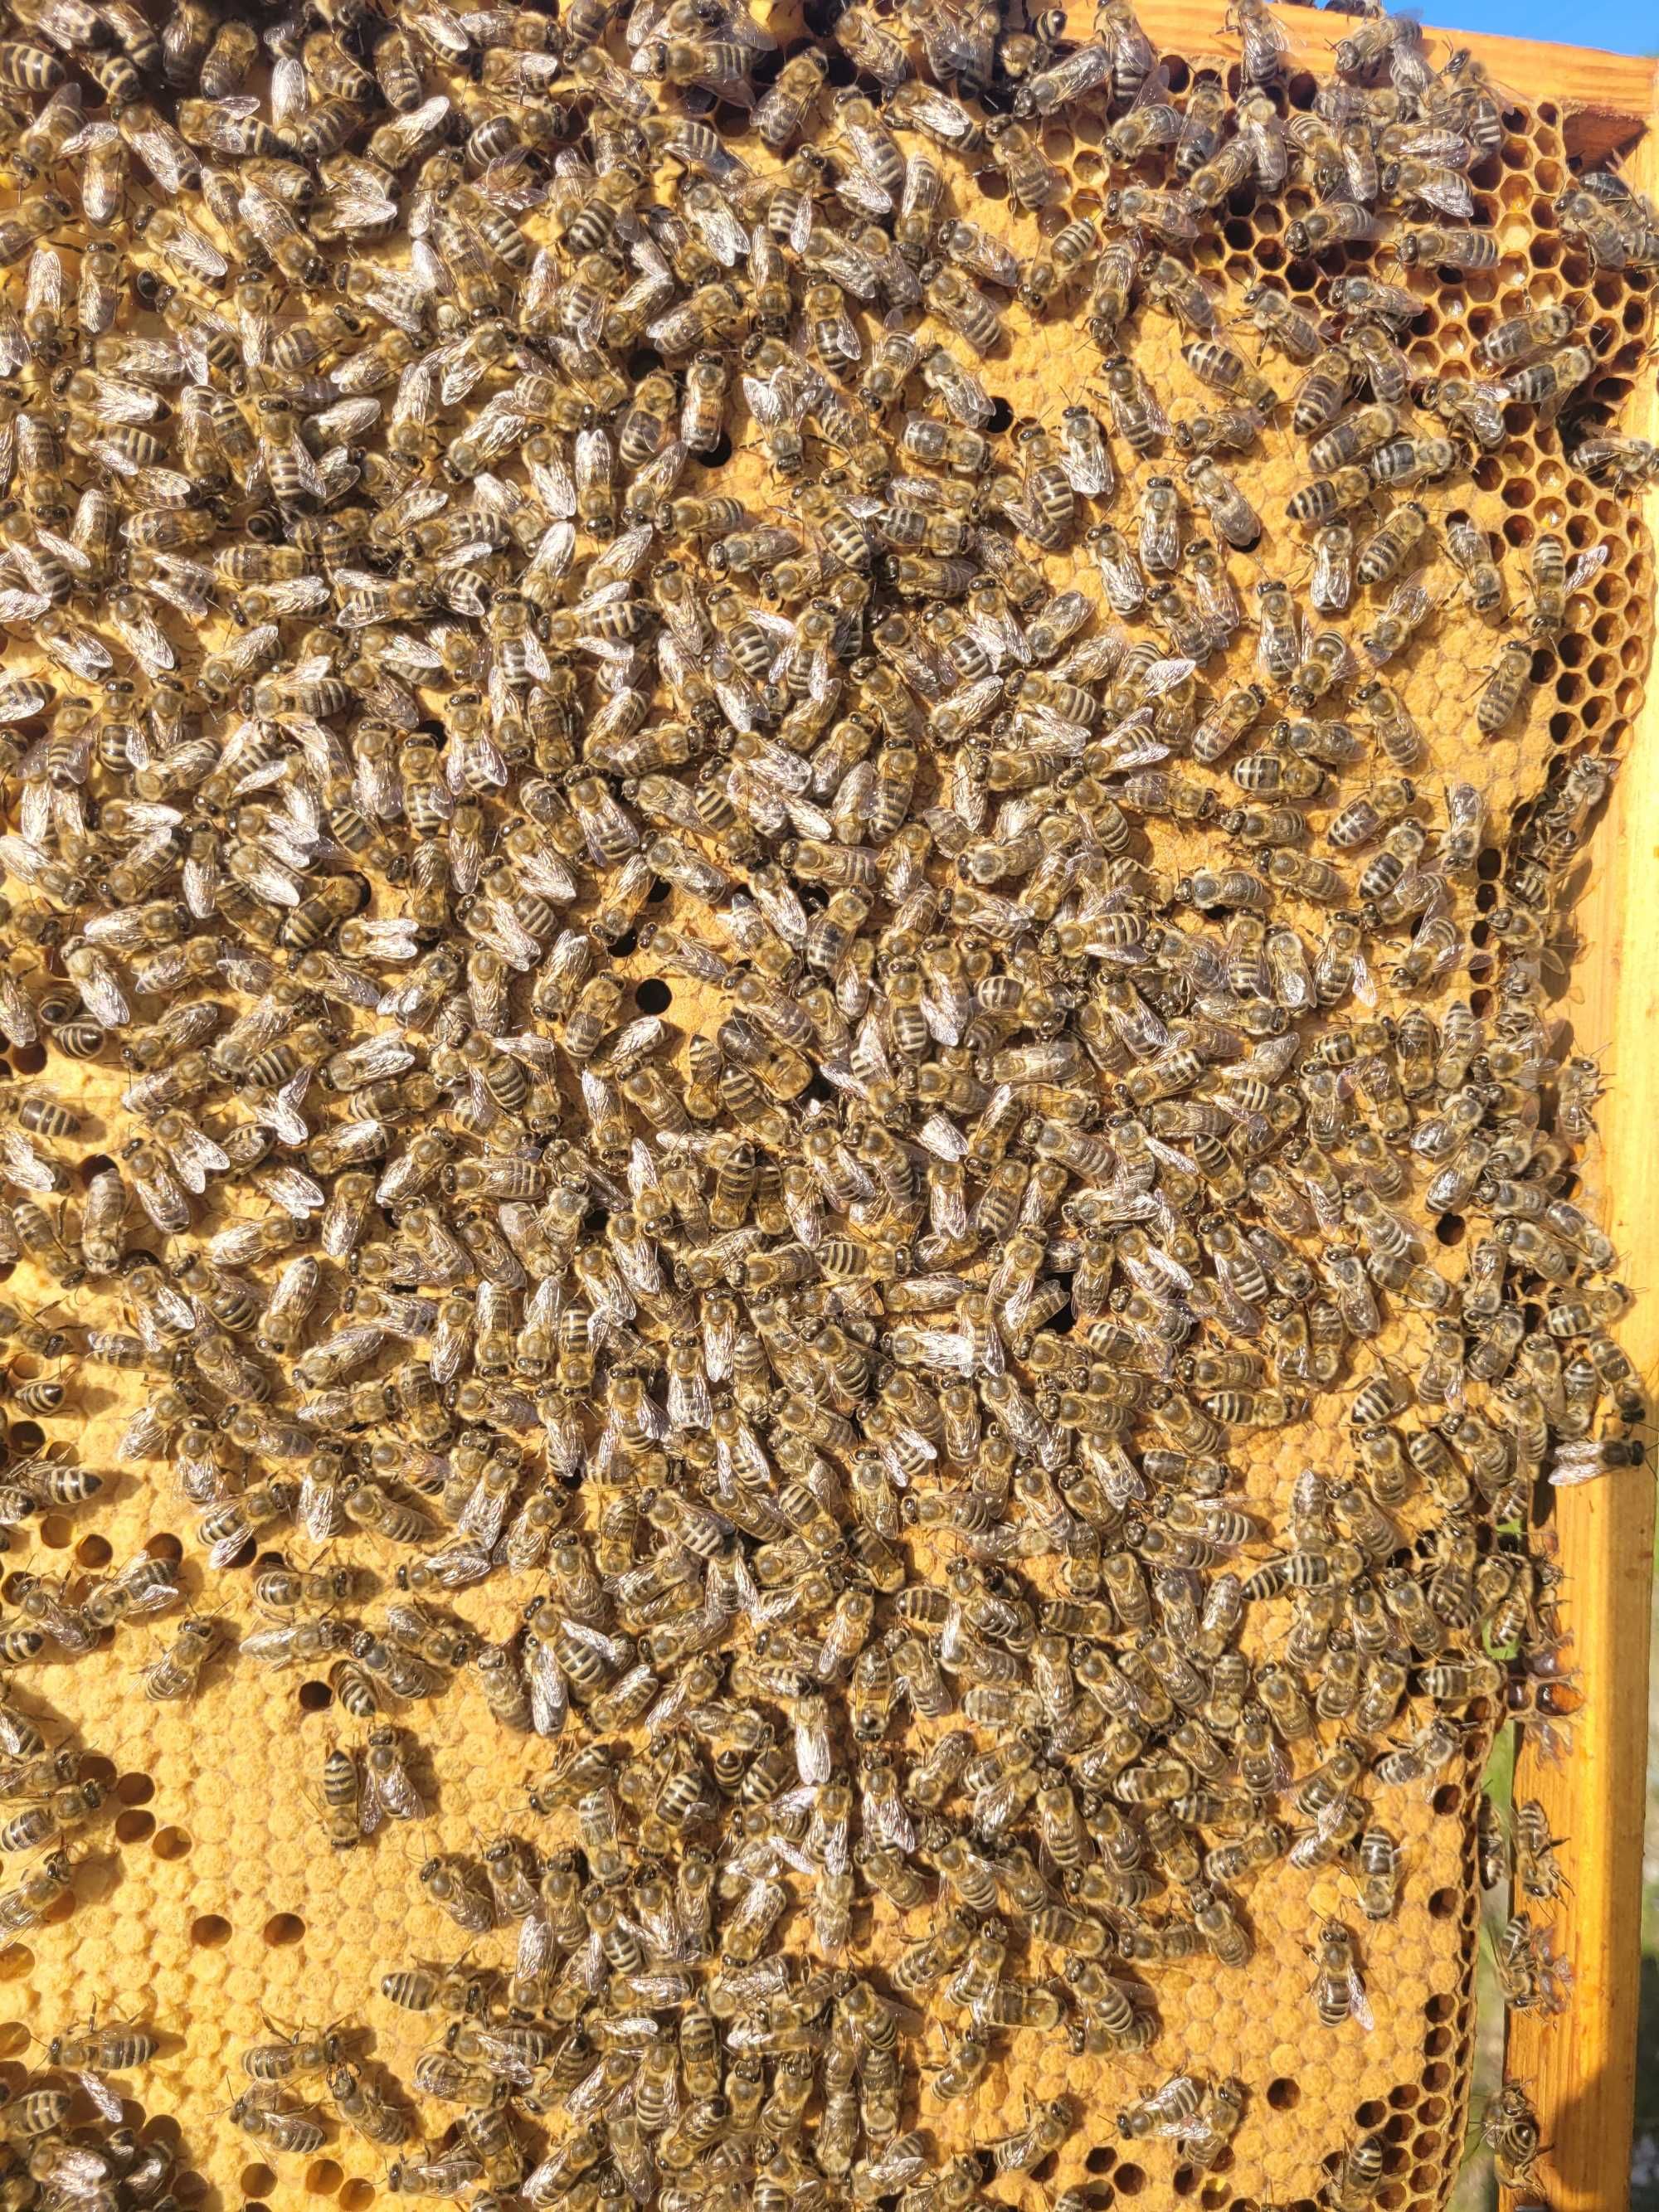 PSZCZOŁY - rodziny pszczele na ramce wielkopolskiej